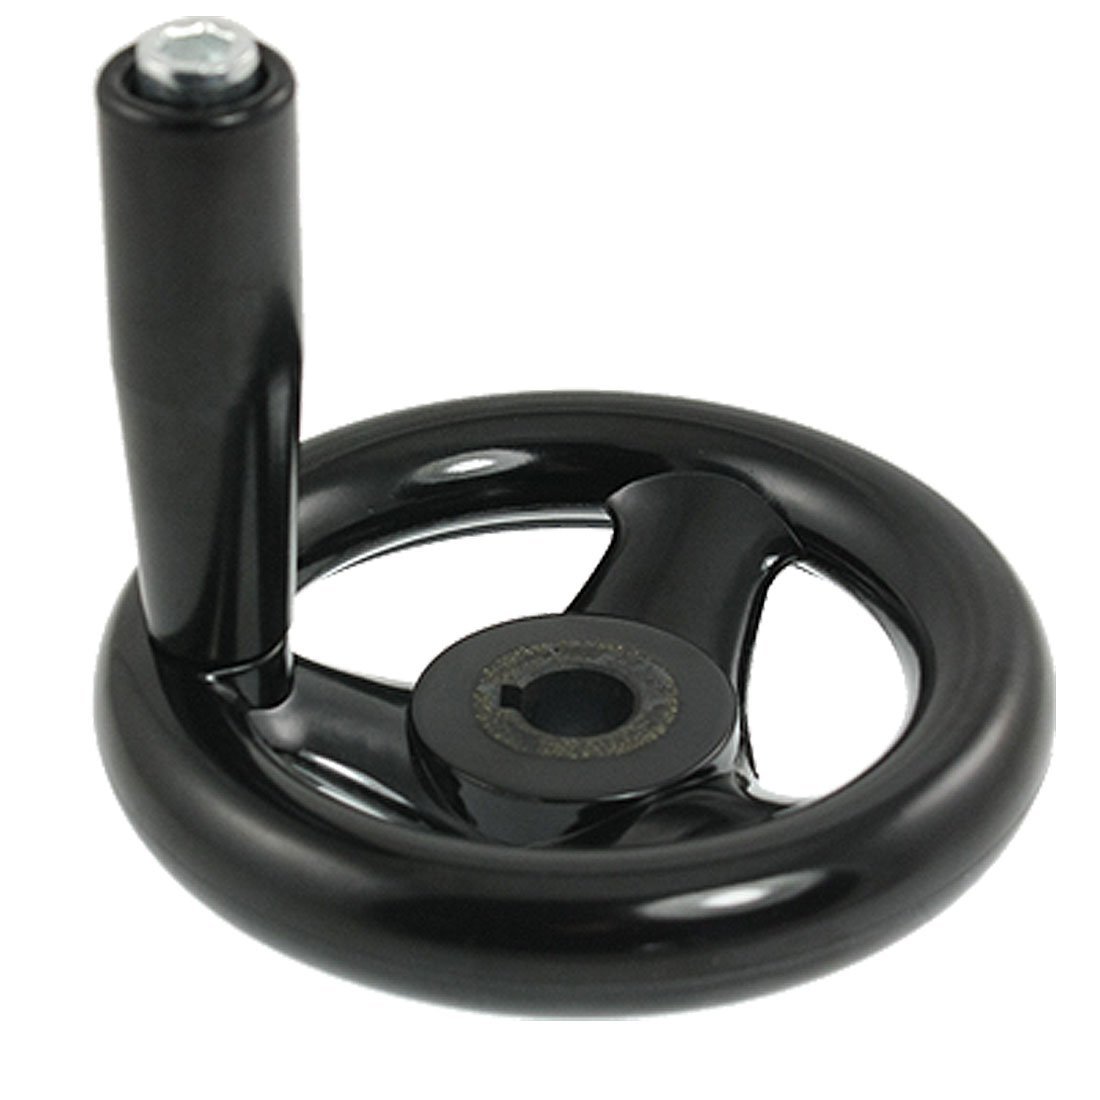 Metal 3.9 "diameter håndhjul roterende håndtag kværne håndhjul til fræsemaskine industrielle værktøjsmaskiner drejebænke værktøj iht